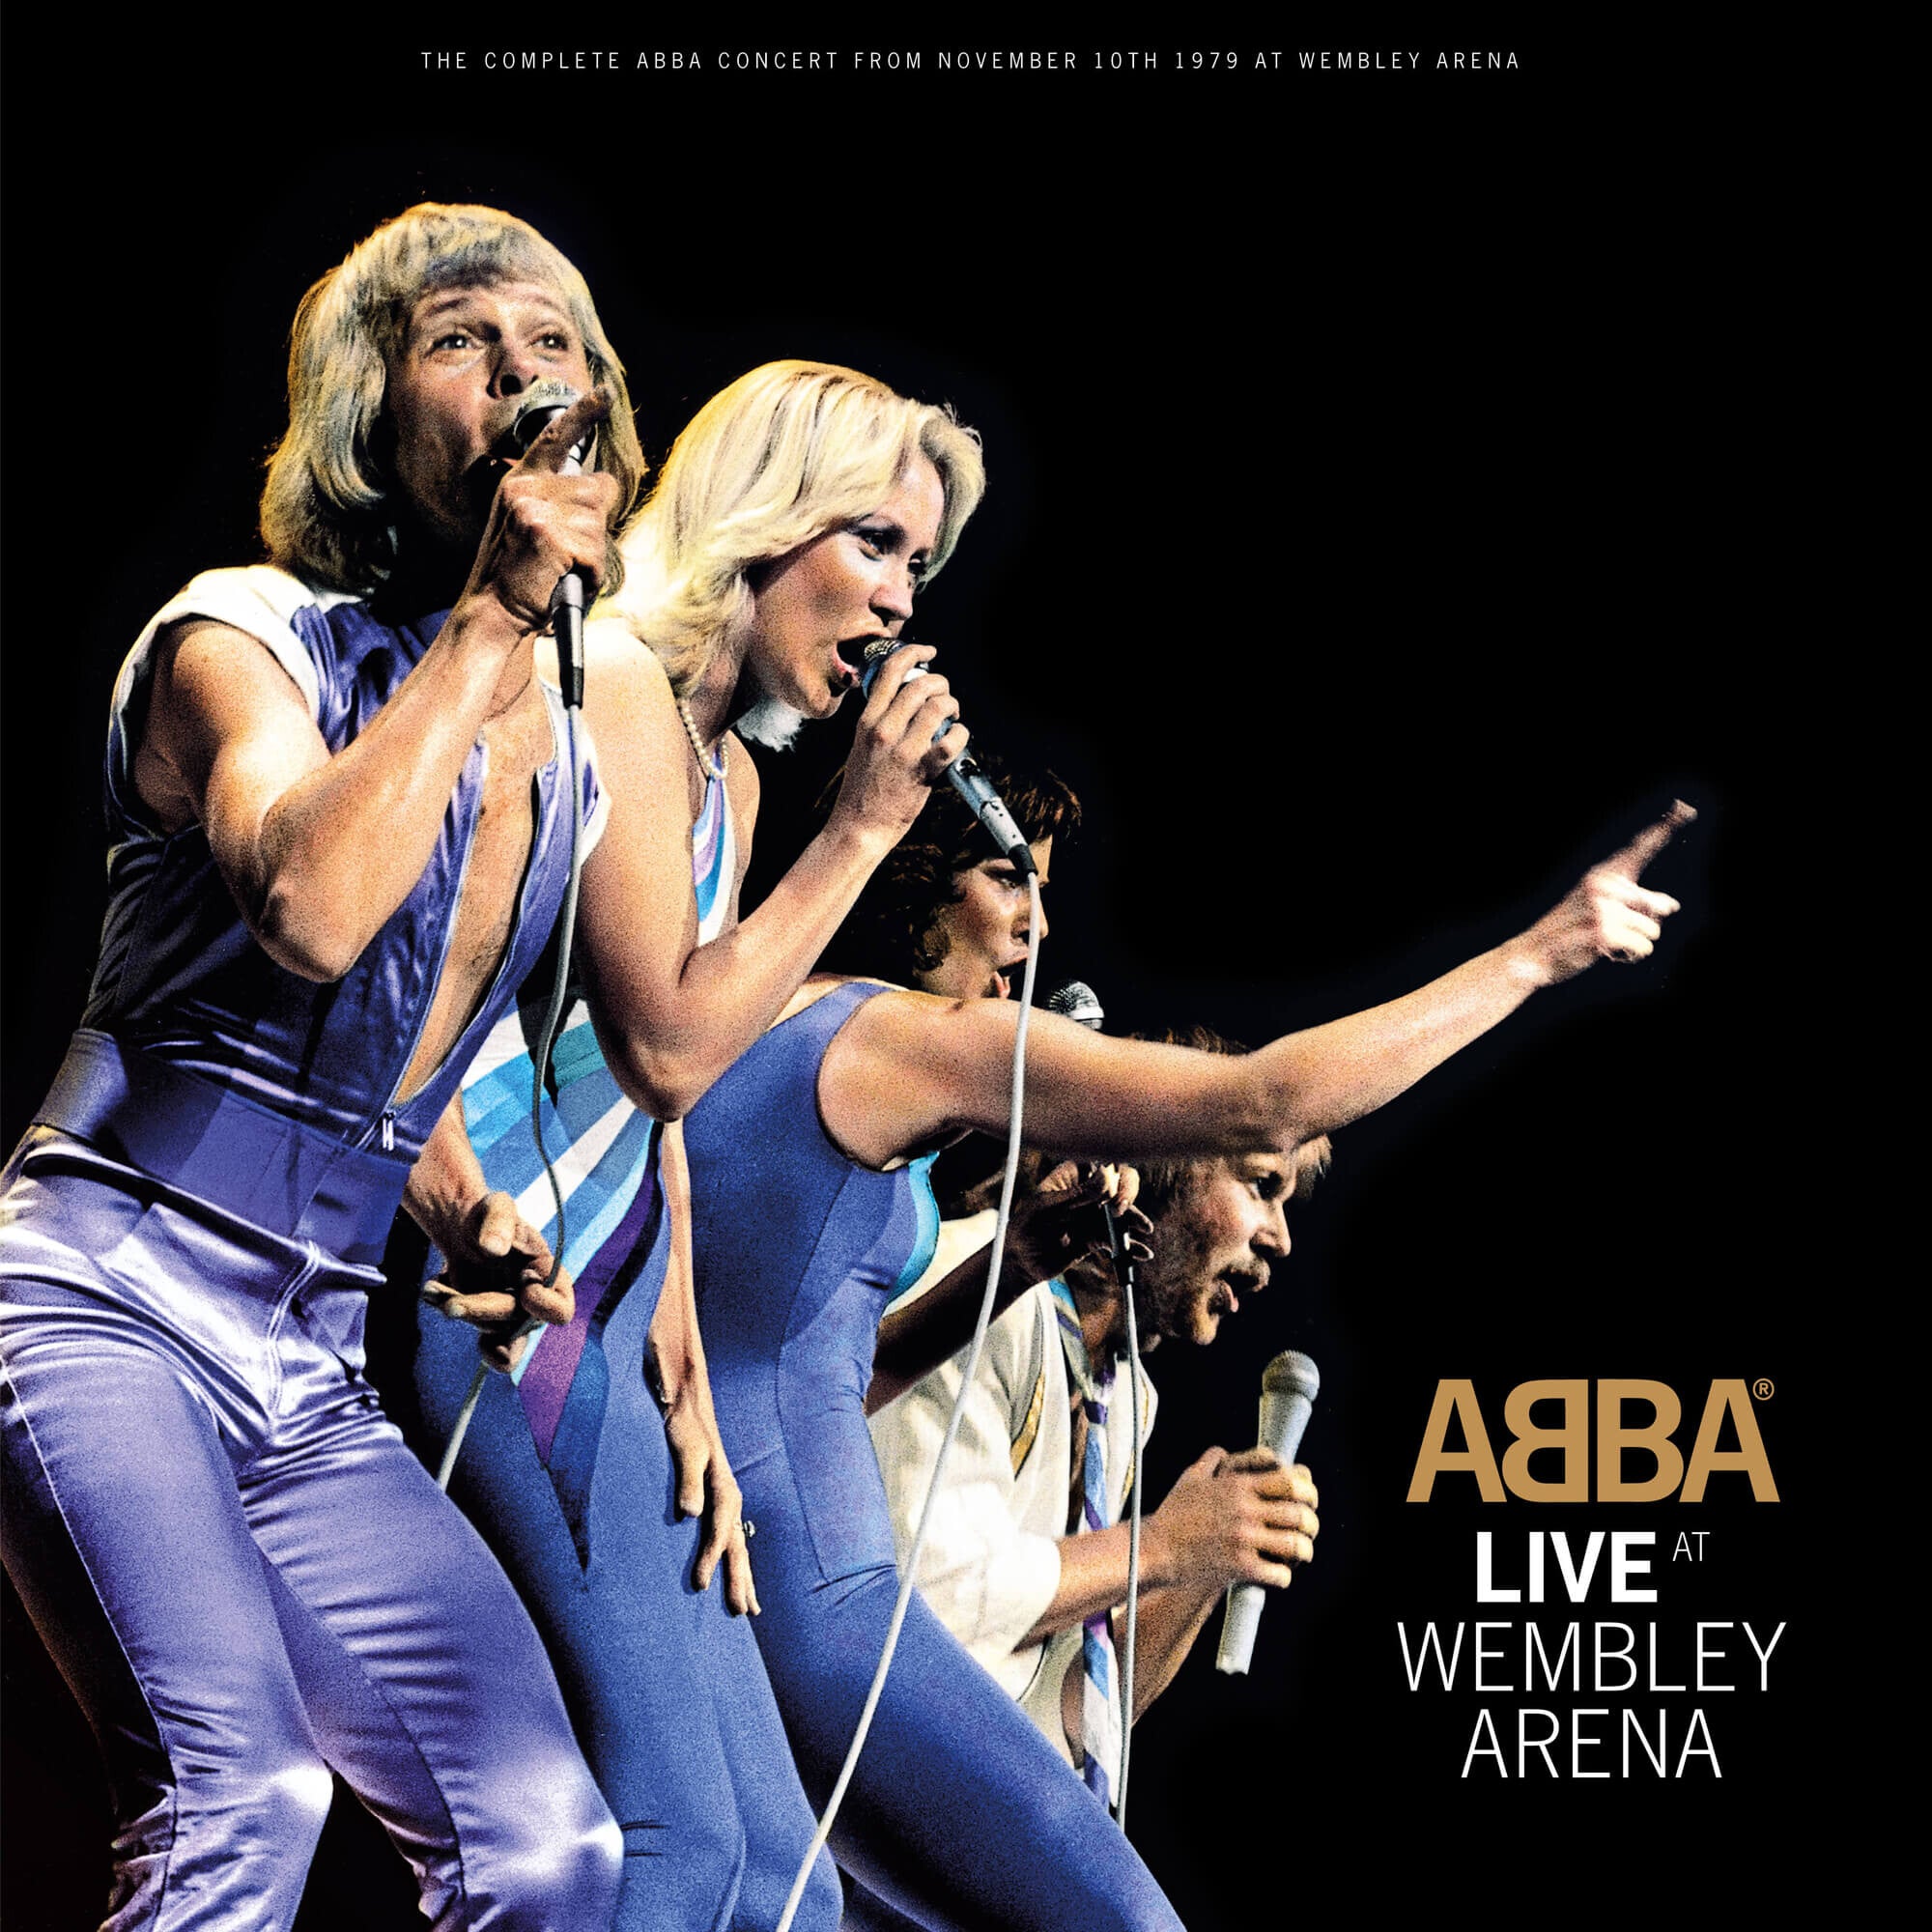 https://images.bravado.de/prod/product-assets/product-asset-data/abba/abba/products/131983/web/294019/image-thumb__294019__3000x3000_original/ABBA-Live-At-Wembley-Ltd-3LP-Vinyl-131983-294019.b1ea3624.jpg